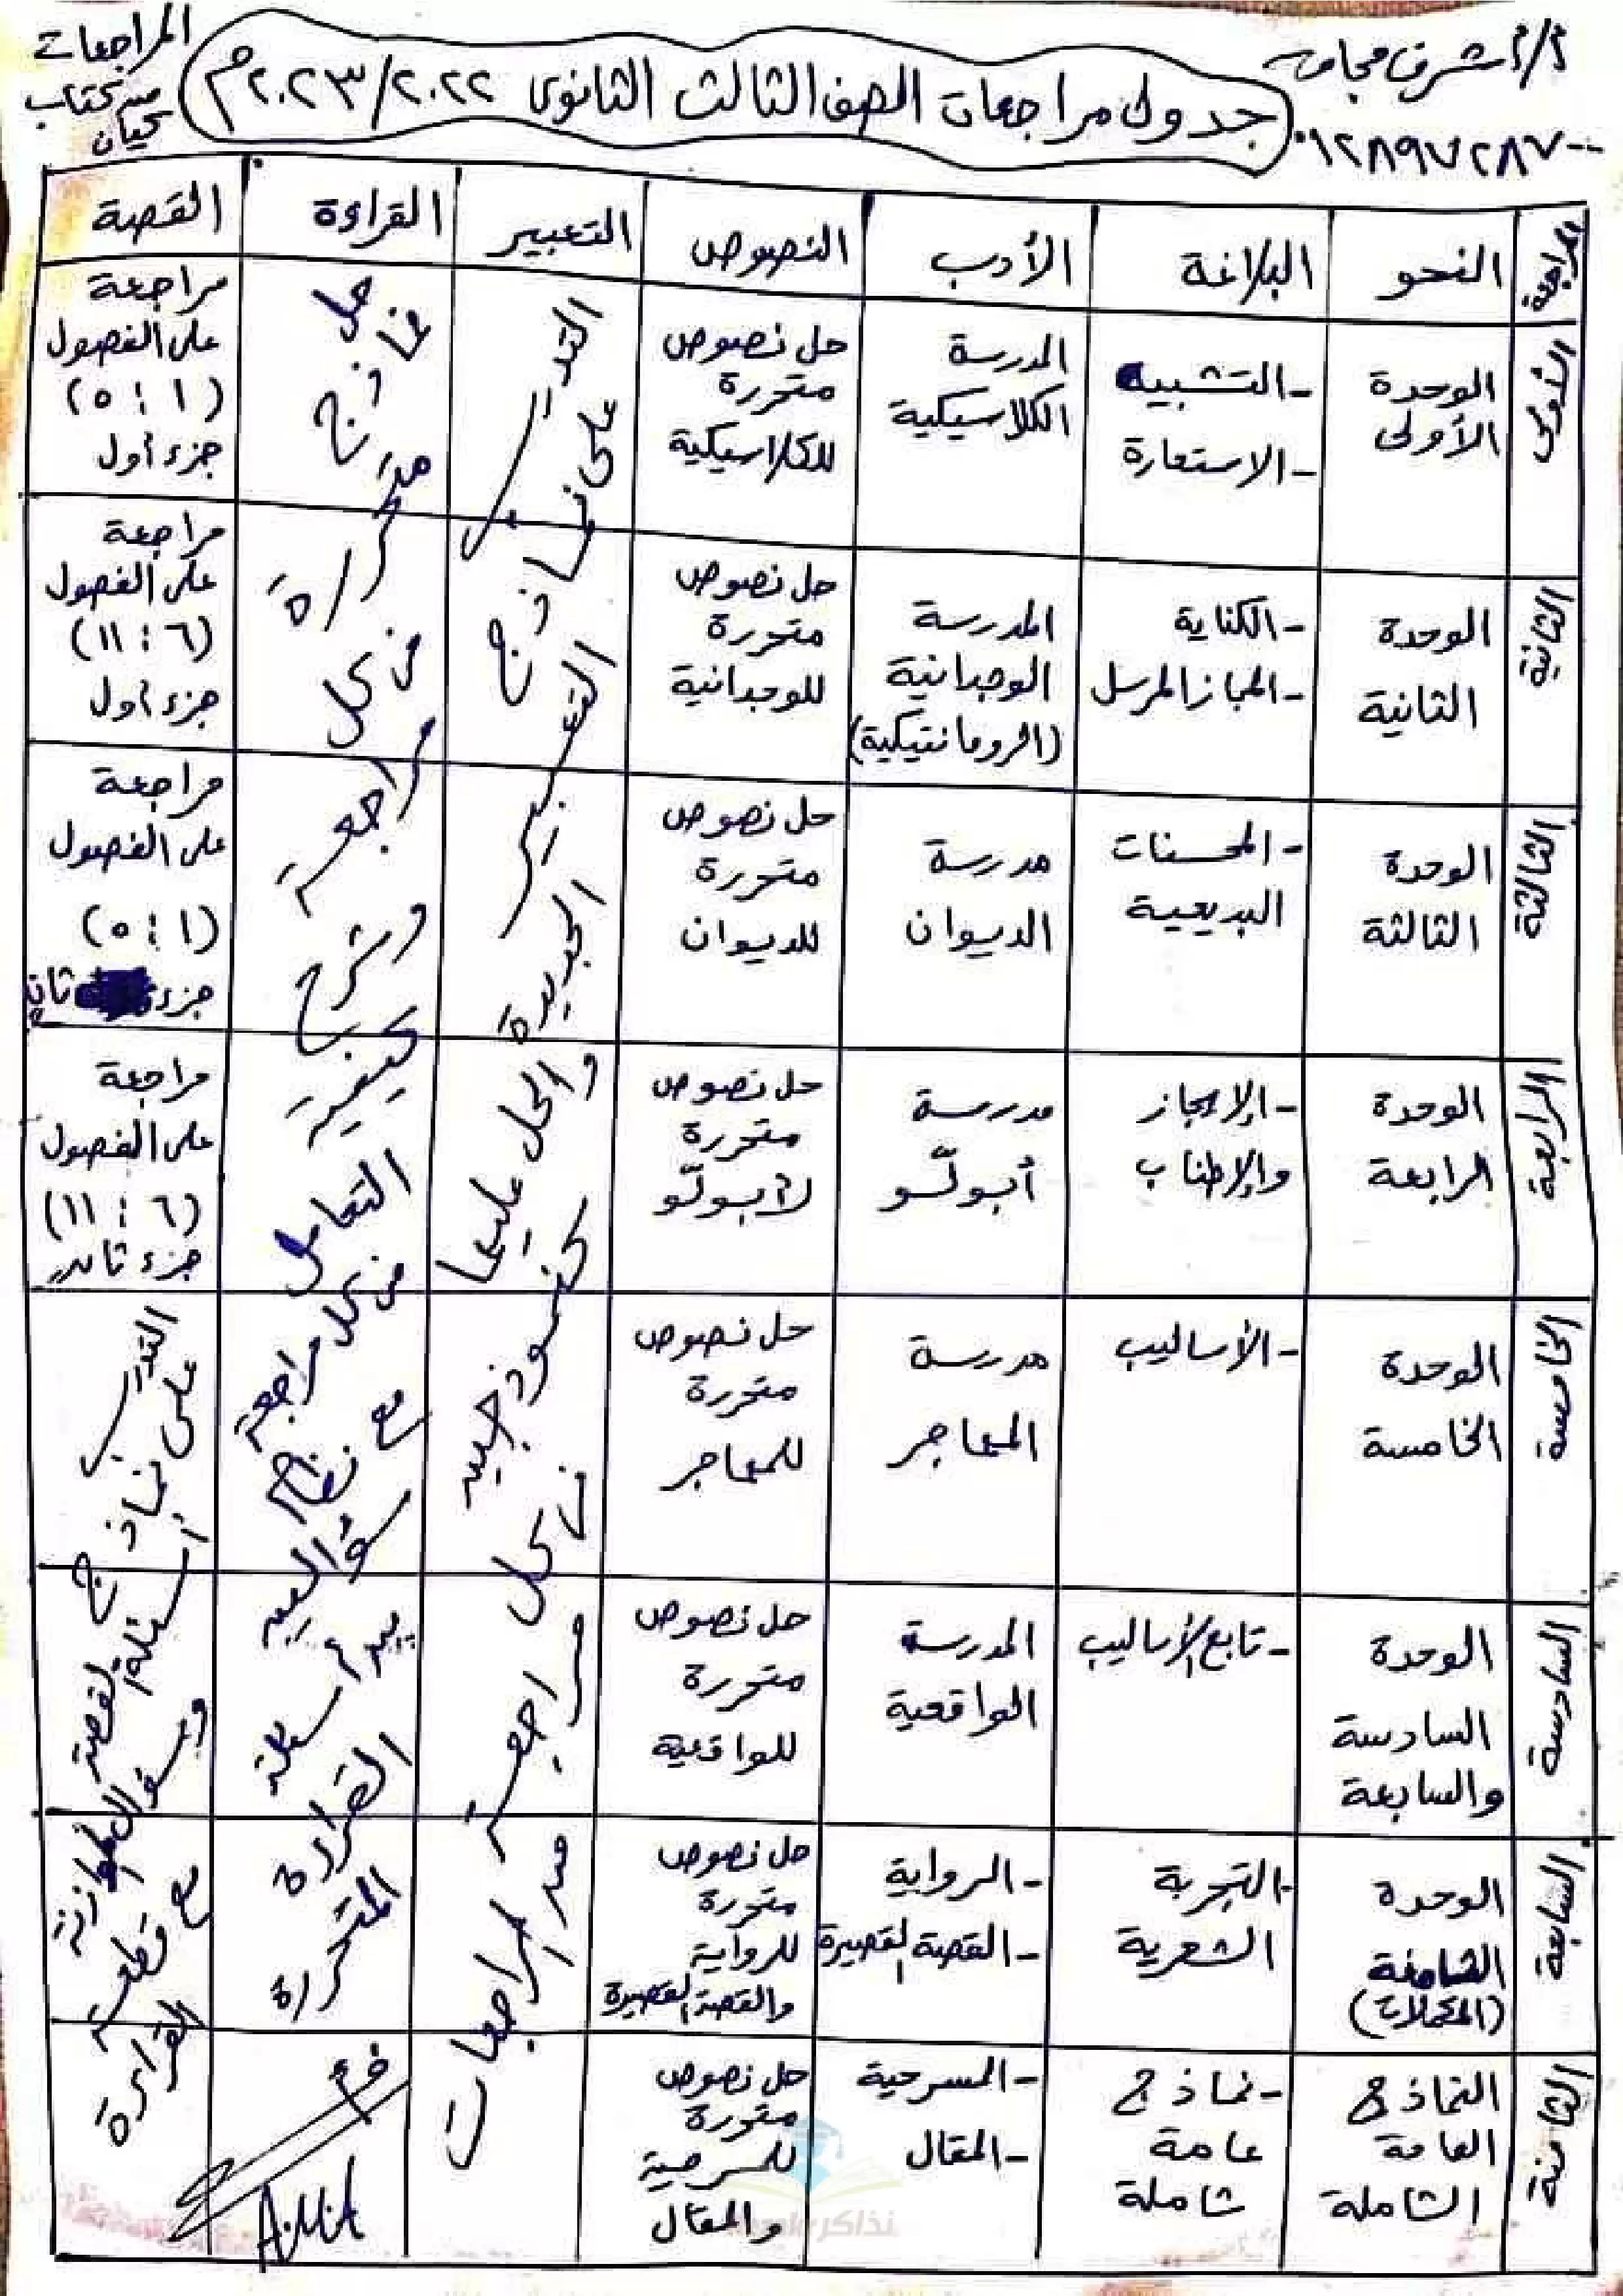 خطة وجدول مراجعة اللغة العربية النهائية للثانوية العامة